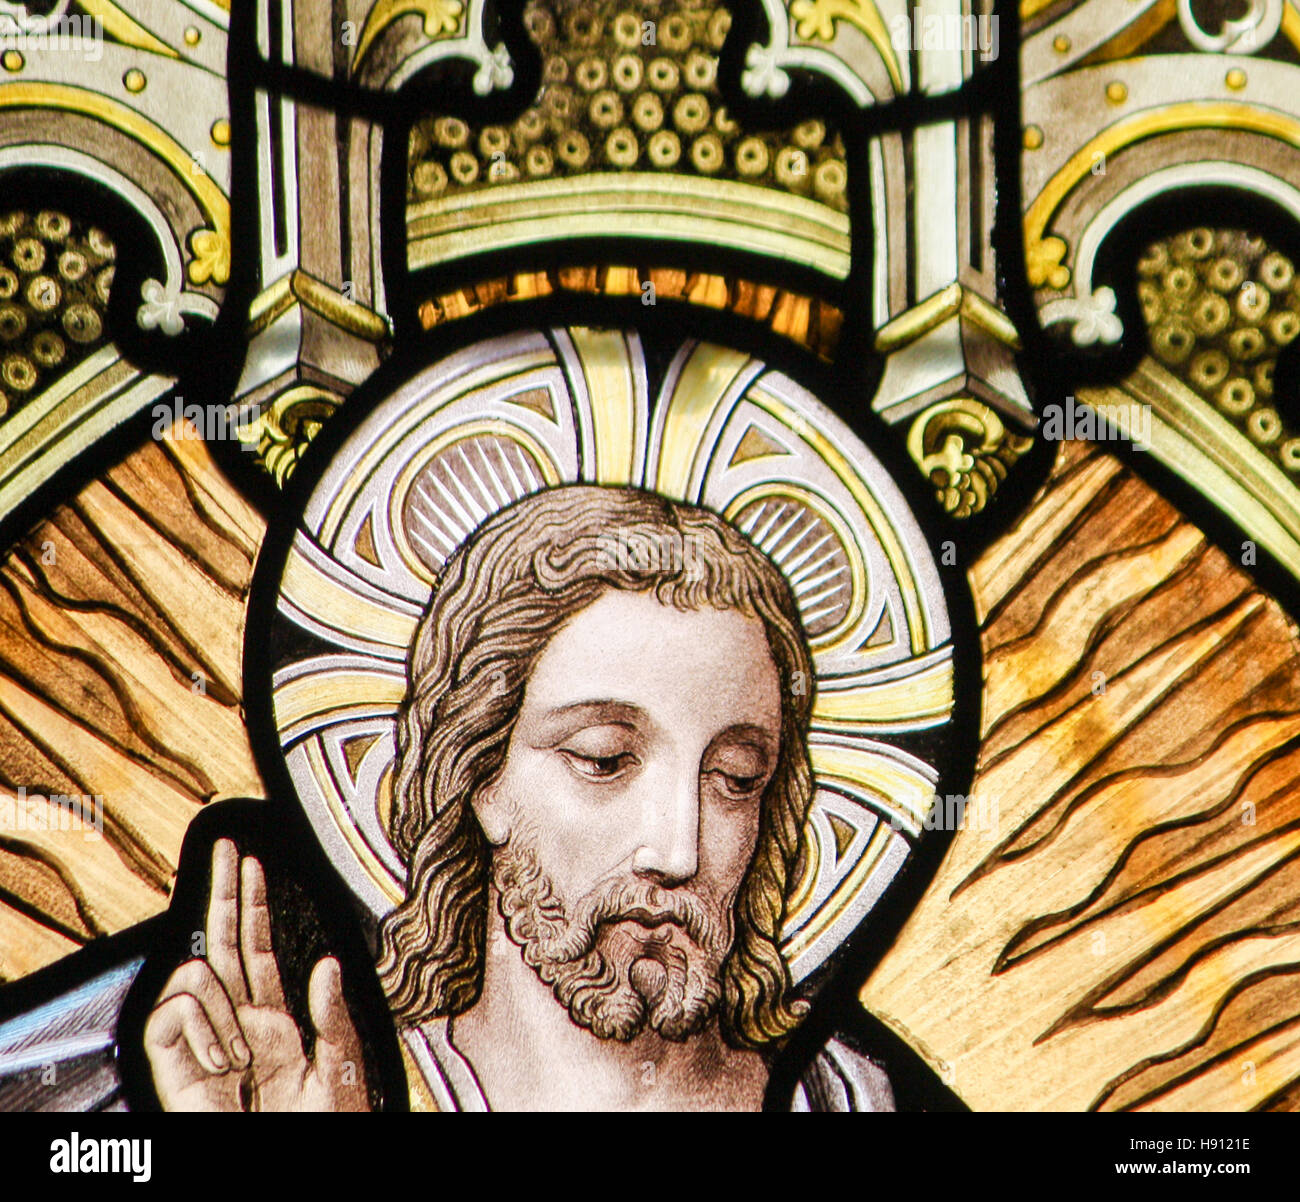 Glasmalerei-Fenster Darstellung der Himmelfahrt Christi in der Kirche Alsemberg, Belgien. Stockfoto